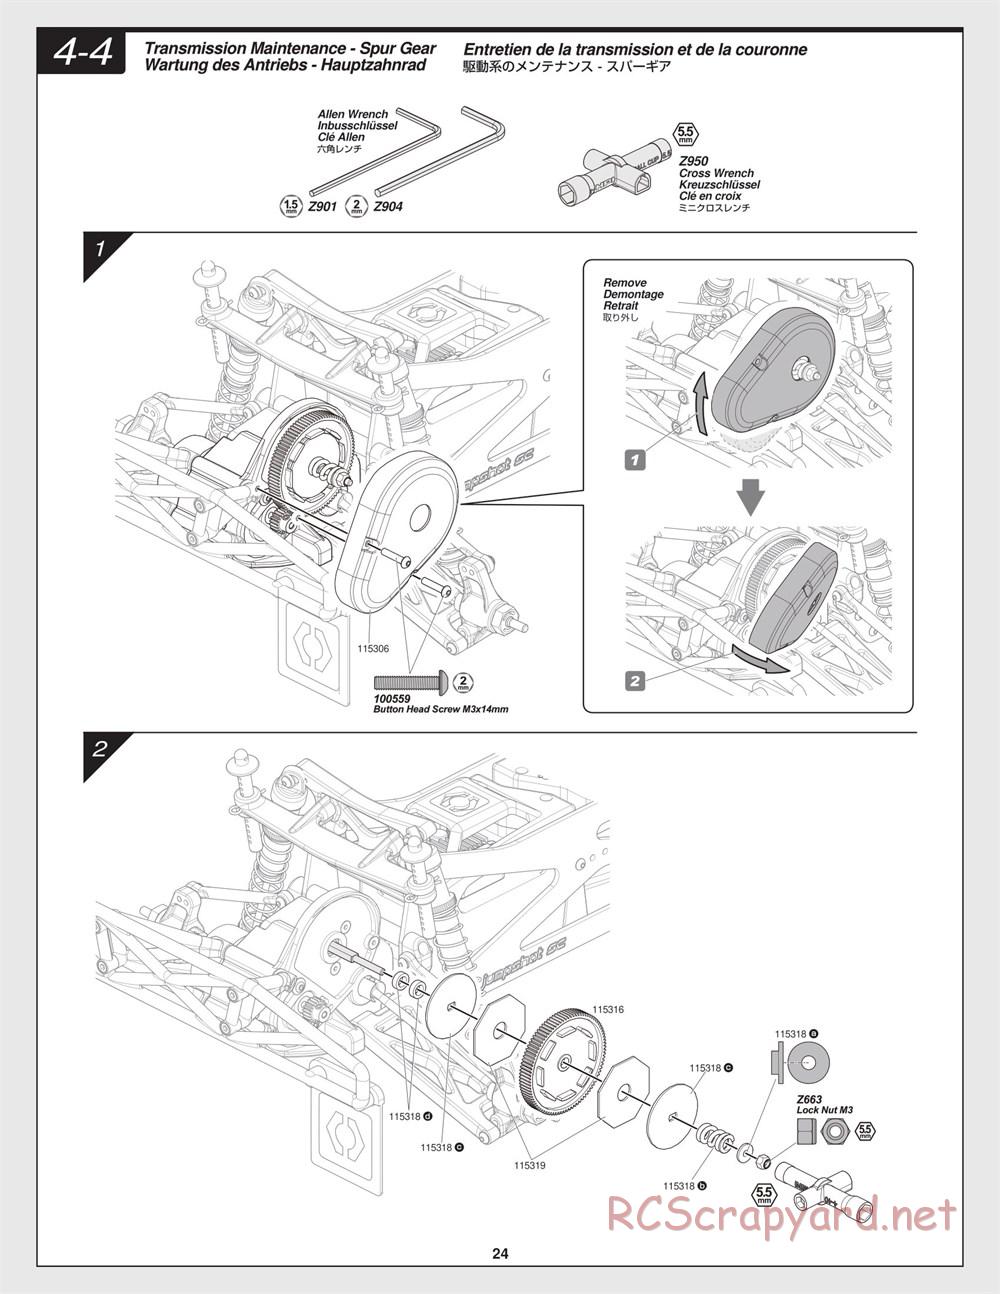 HPI - Jumpshot SC - Manual - Page 24